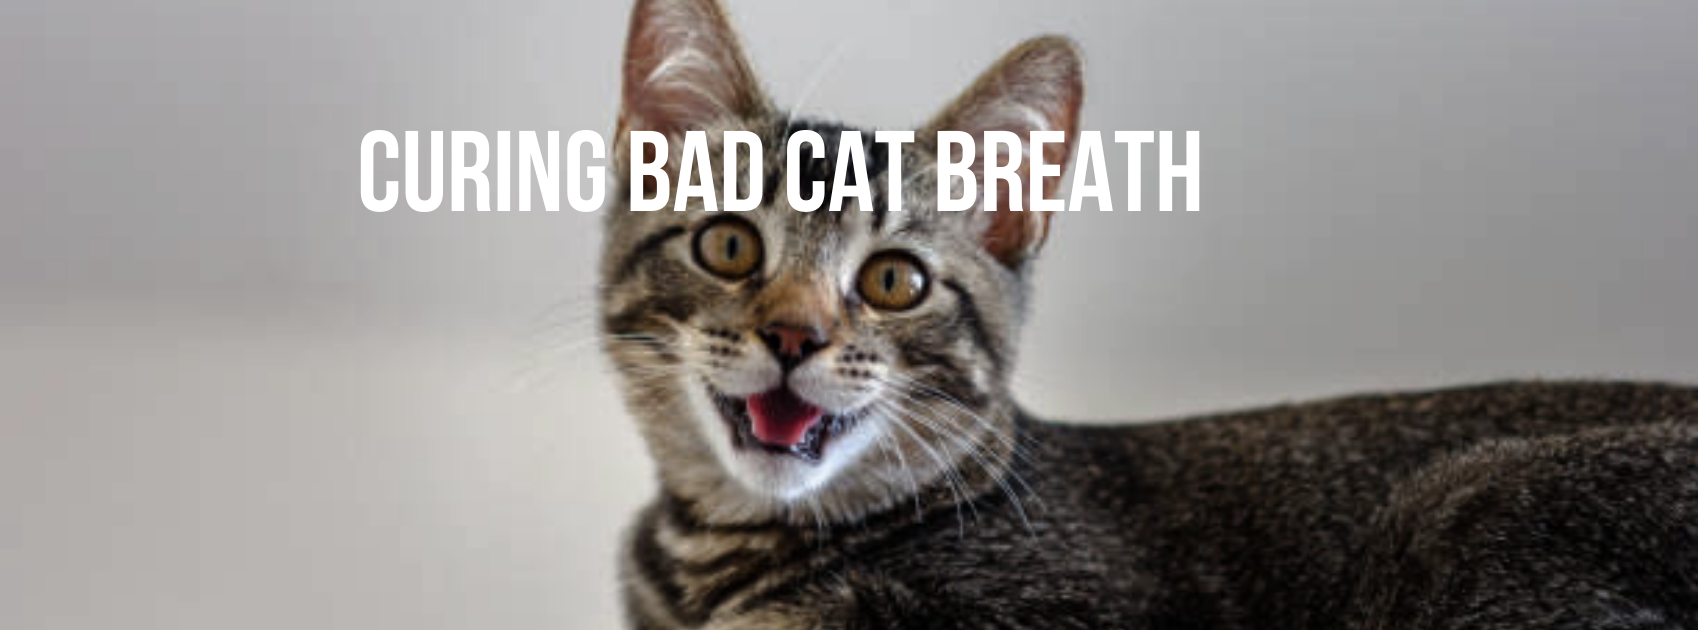 CURING BAD CAT BREATH